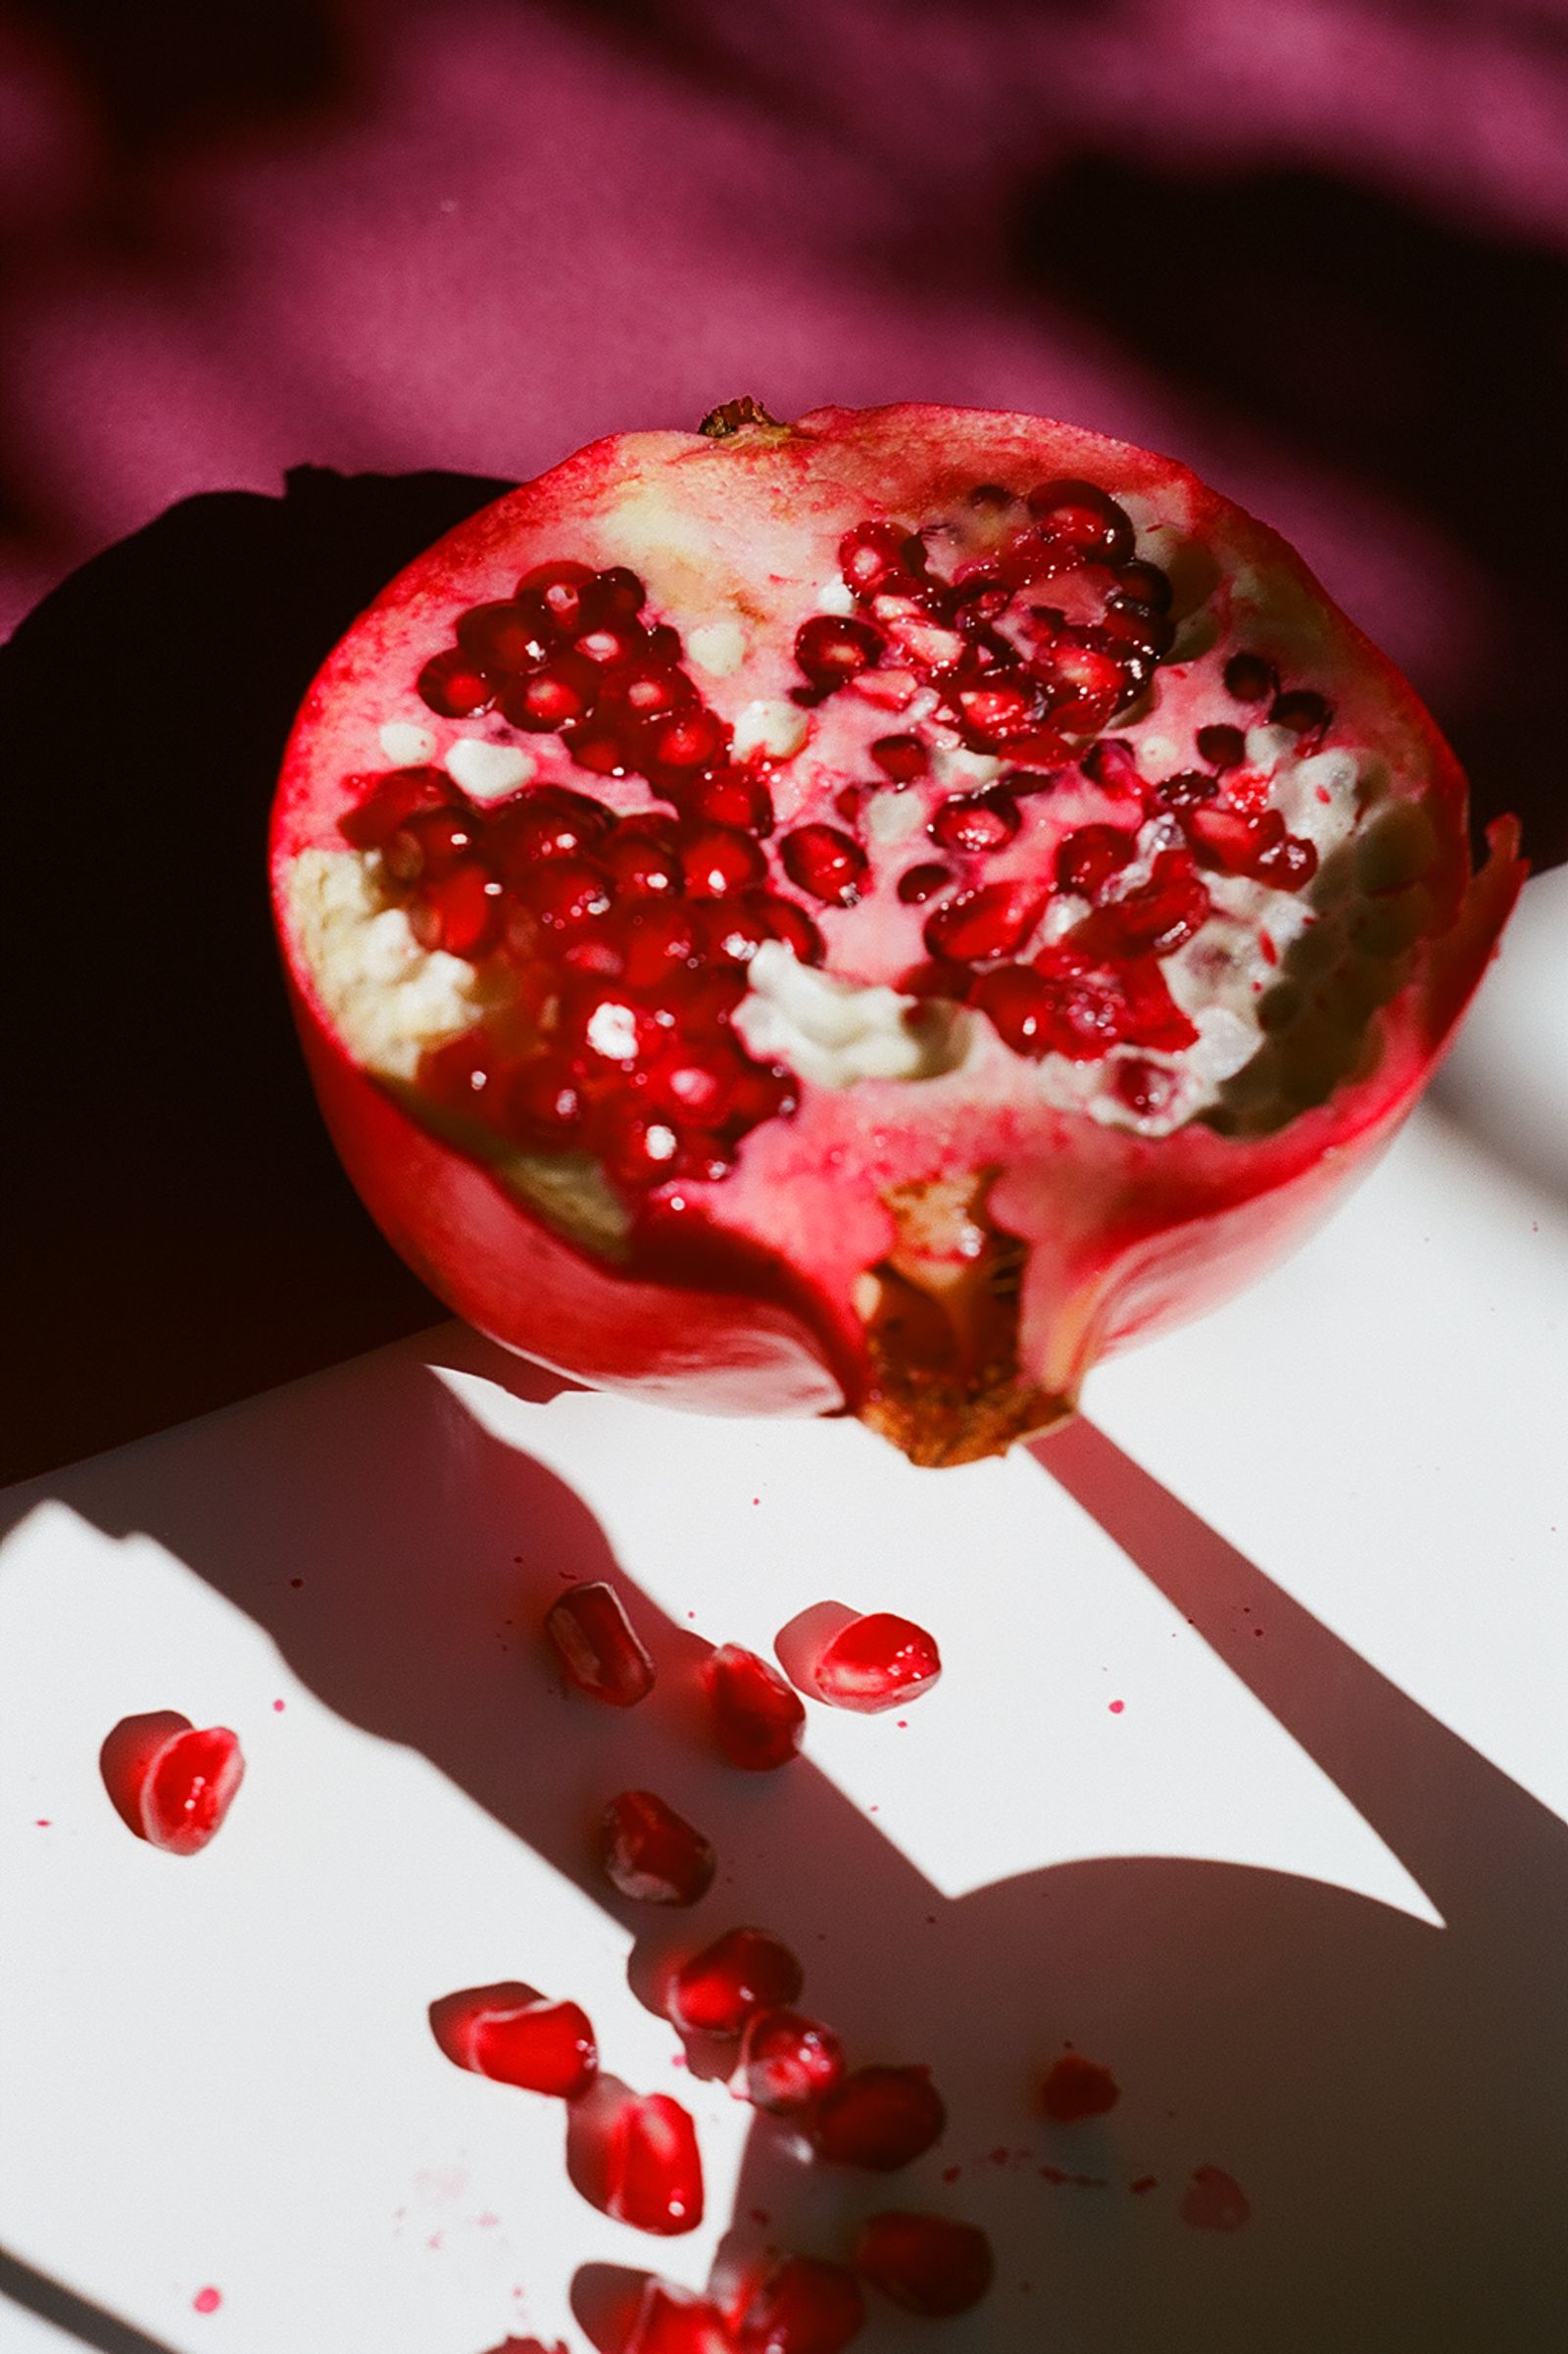 © Pavel Bukreev - Pomegranate still life